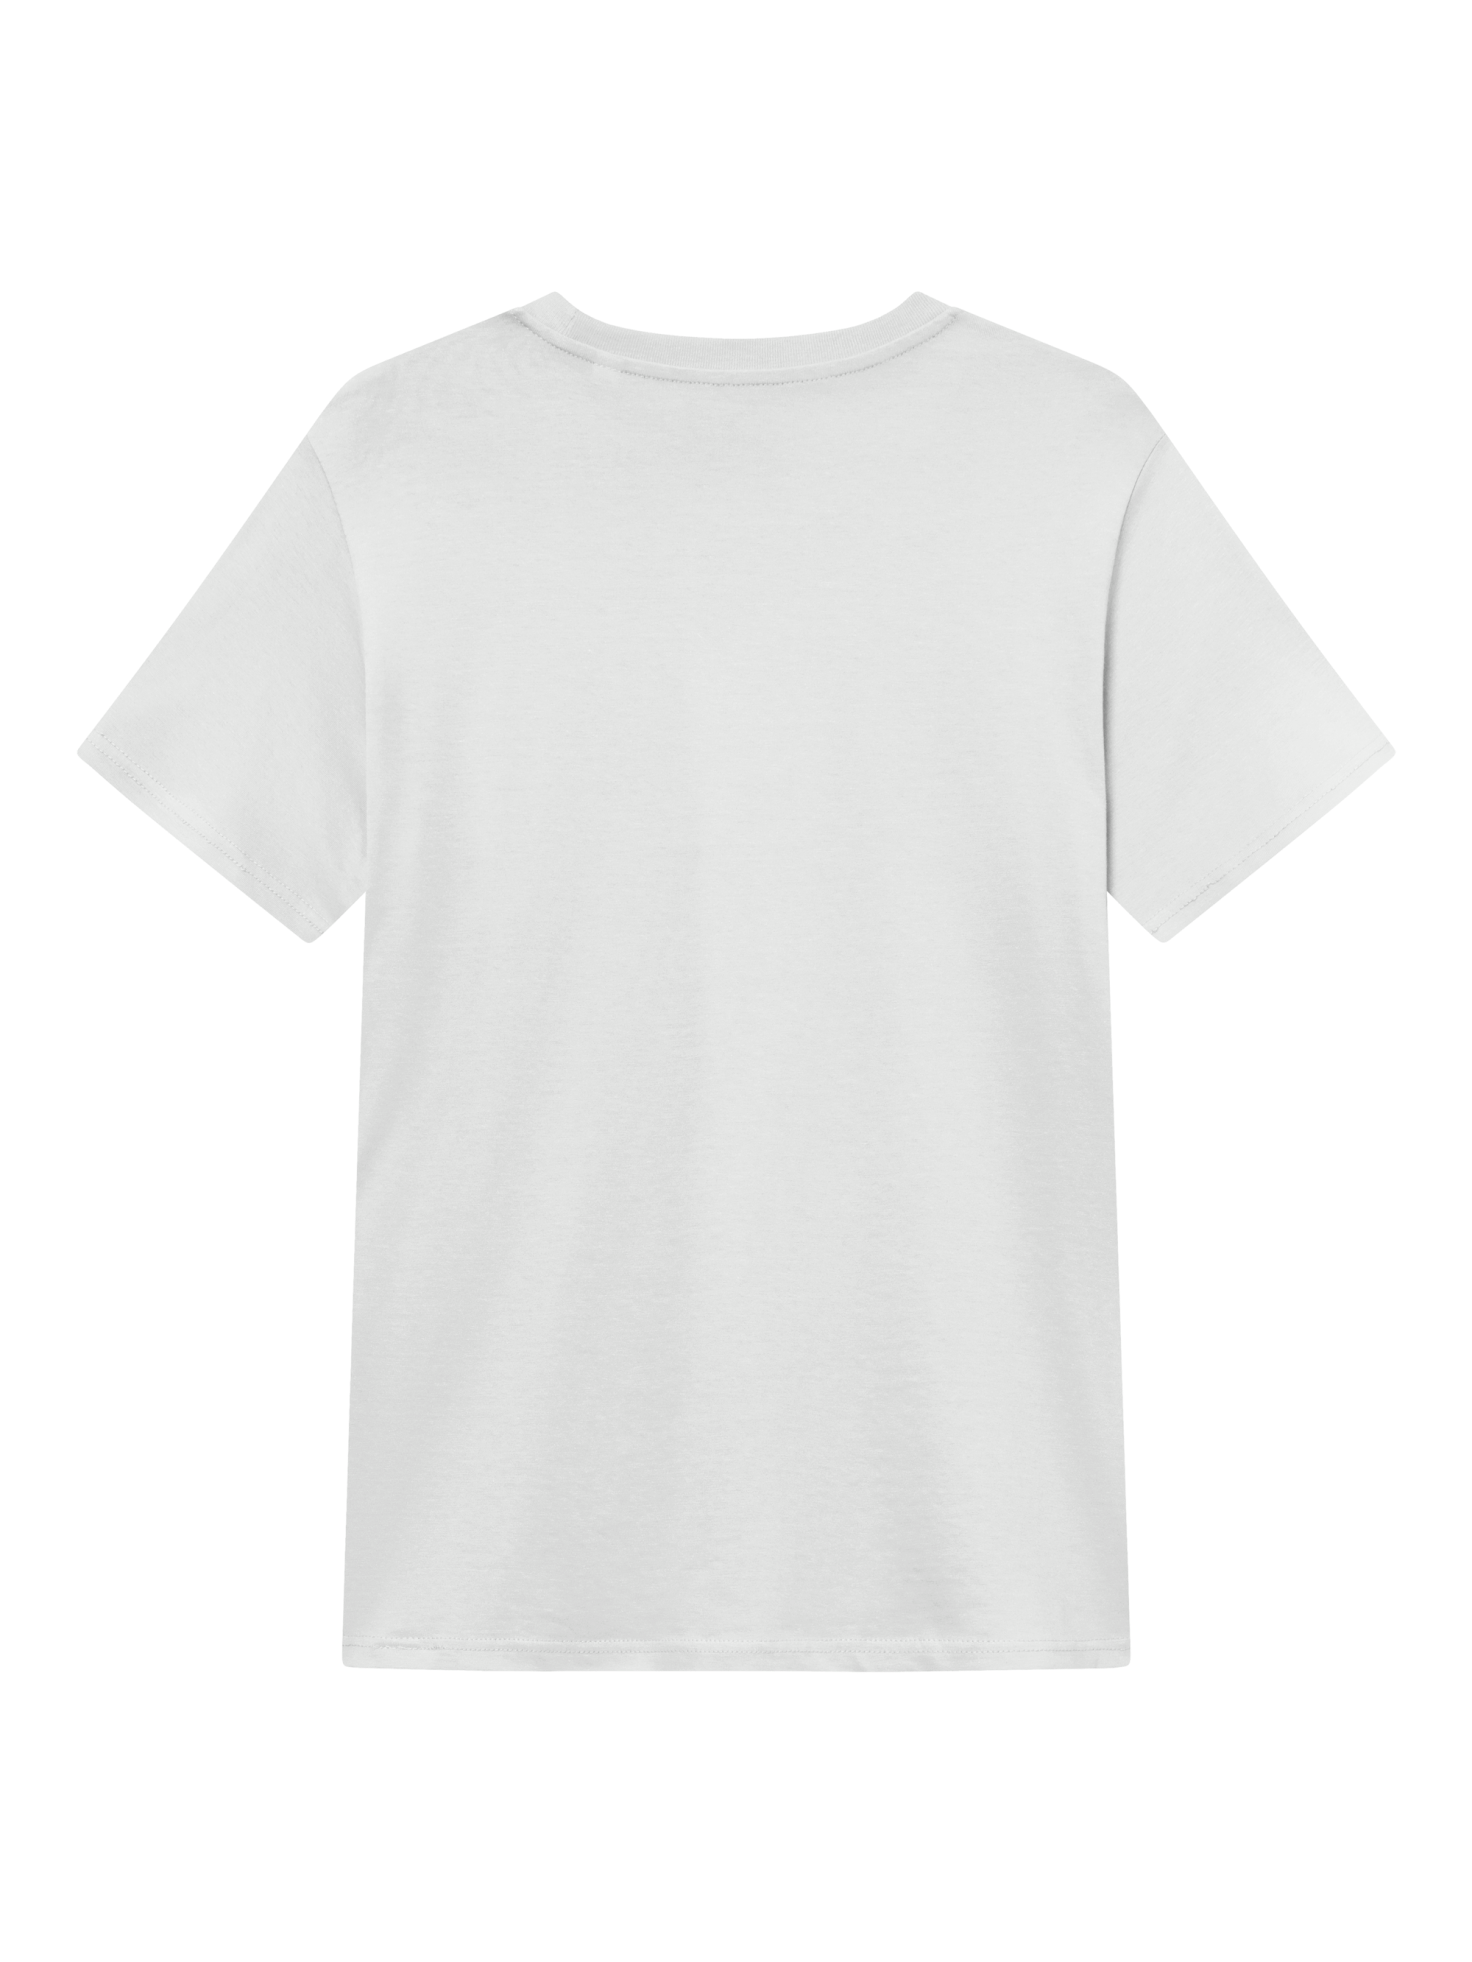 Smilo 365 T-shirt